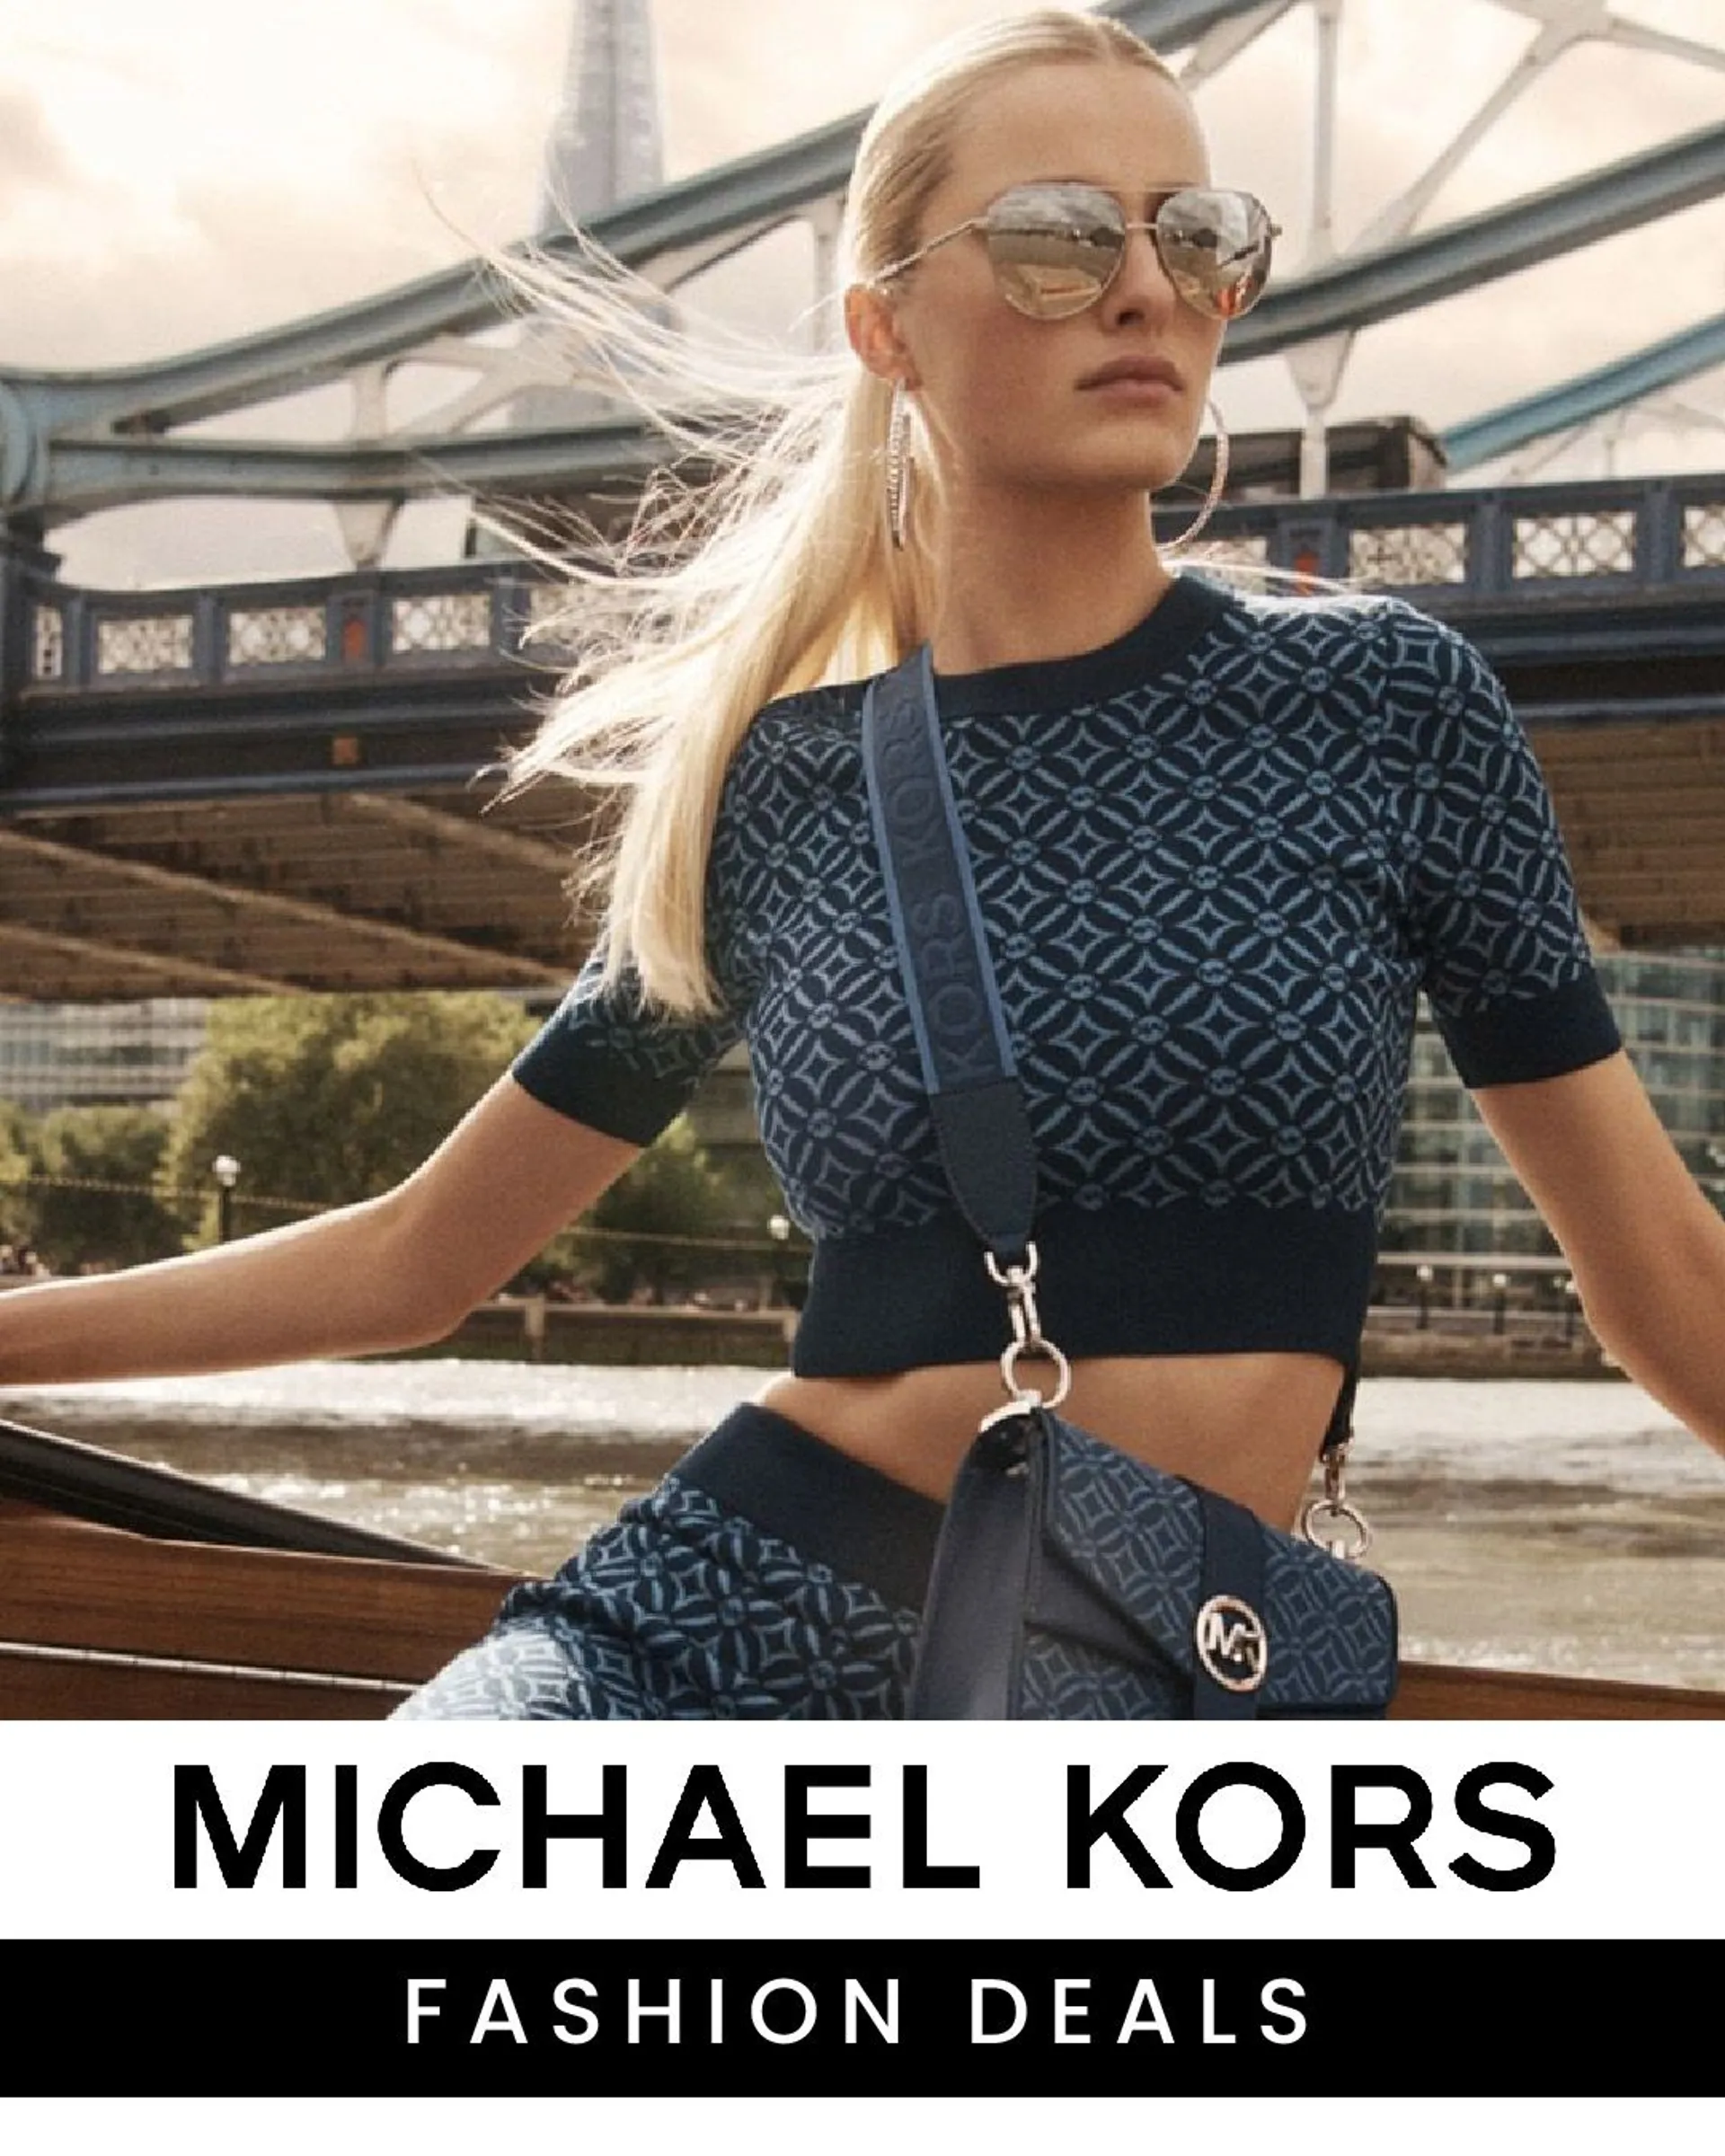 Michael Kors - Fashion